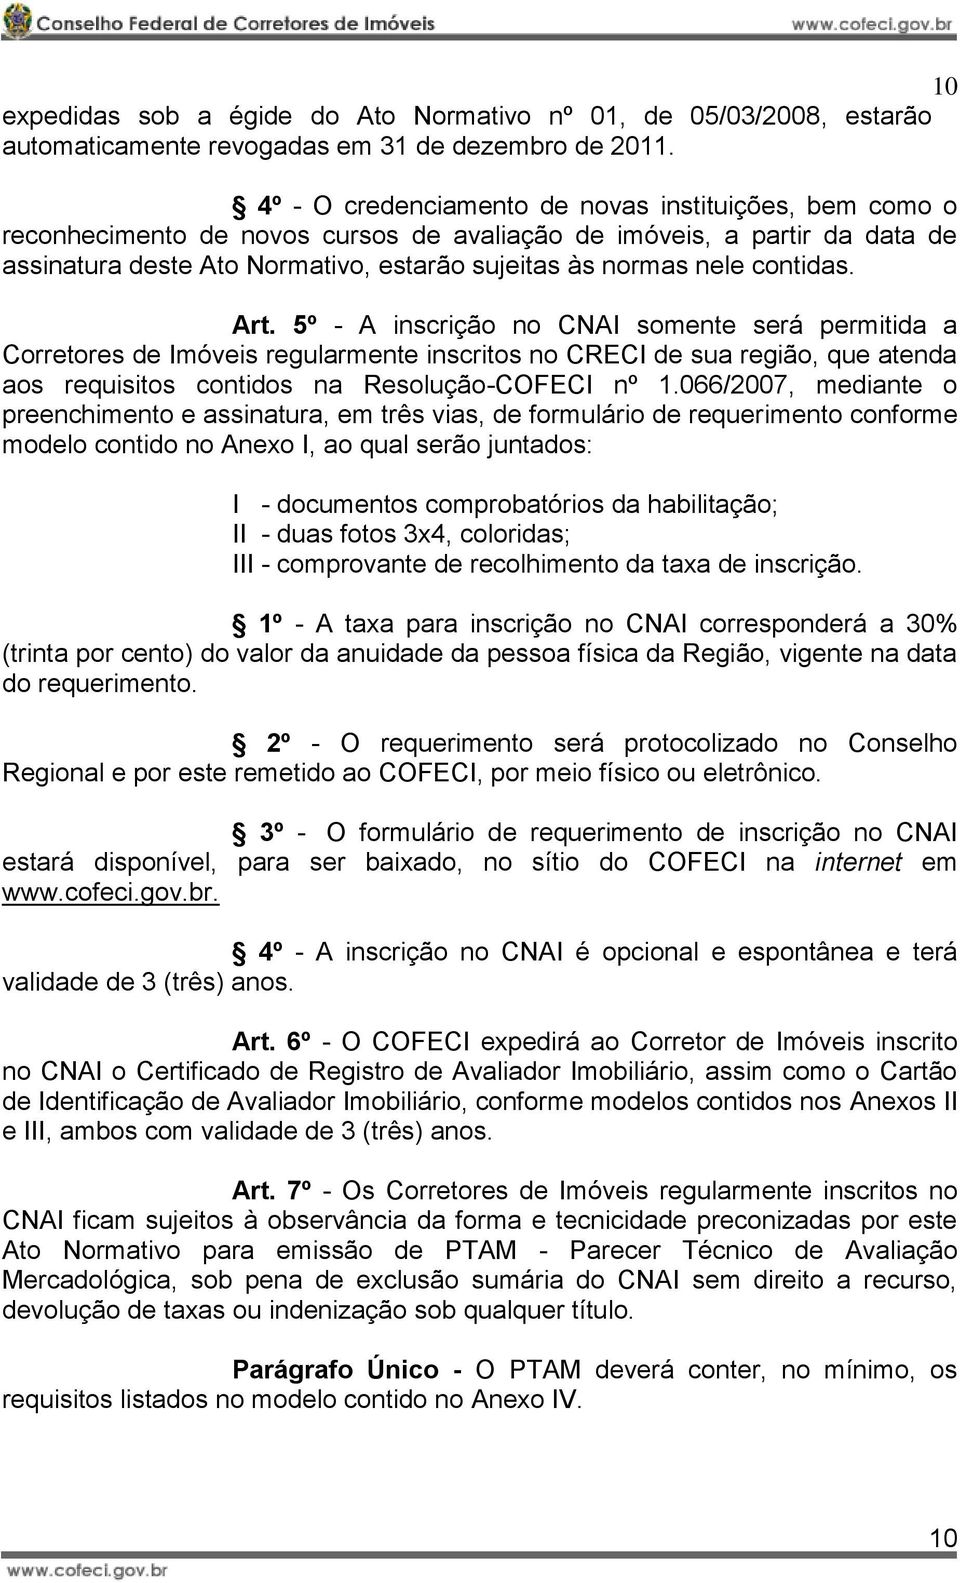 contidas. Art. 5º - A inscrição no CNAI somente será permitida a Corretores de Imóveis regularmente inscritos no CRECI de sua região, que atenda aos requisitos contidos na Resolução-COFECI nº 1.